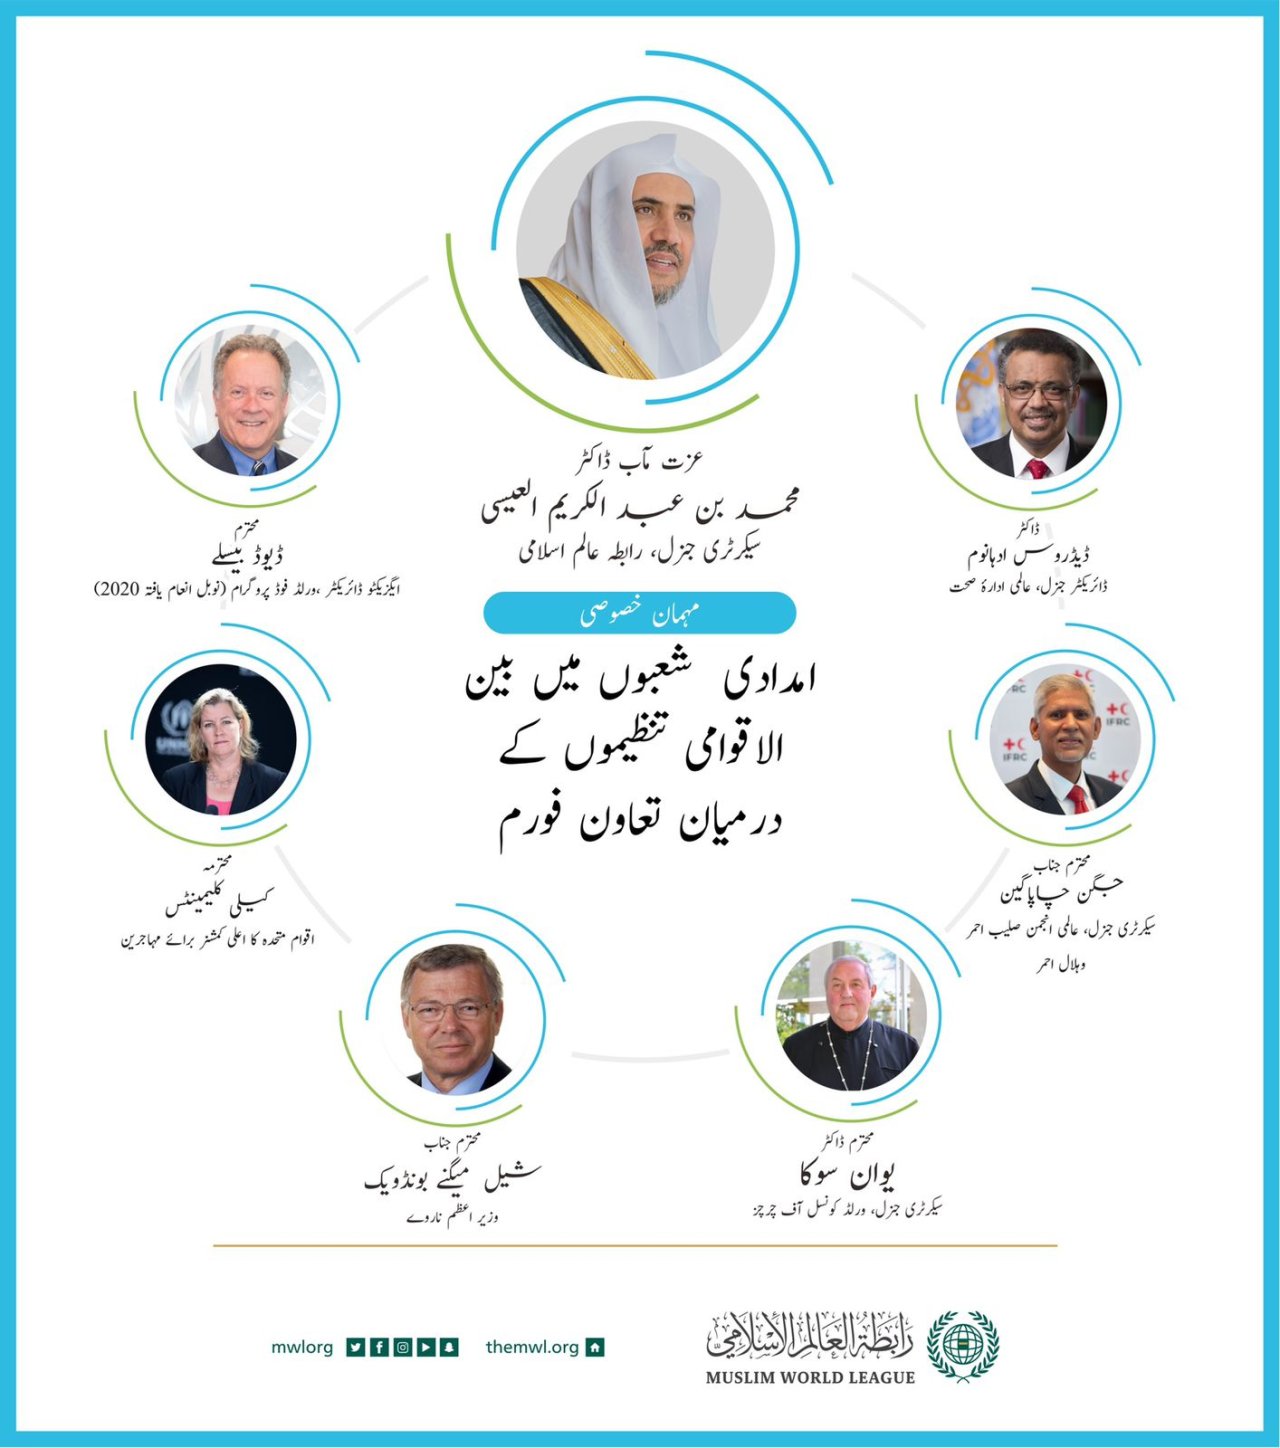 رابطہ عالمی اسلامی کے سیکرٹری جنرل کی جنیوا میں امدادی شعبوں میں بین الاقوامی تنظیموں کےدرمیان تعاون فورم میں شرکت